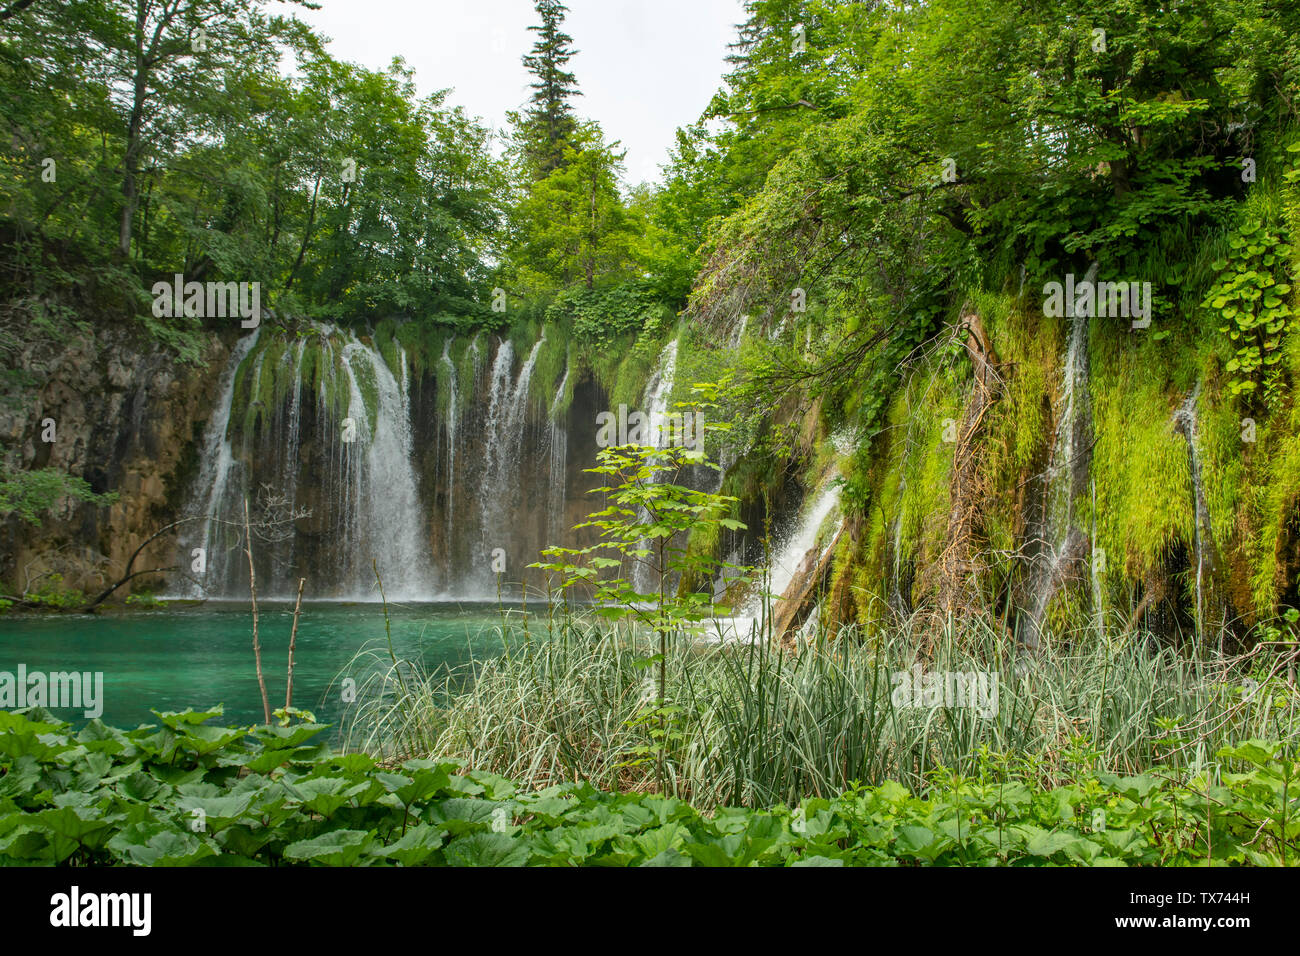 Galovacki Buk Cascade, parc national des Lacs de Plitvice, Croatie Banque D'Images